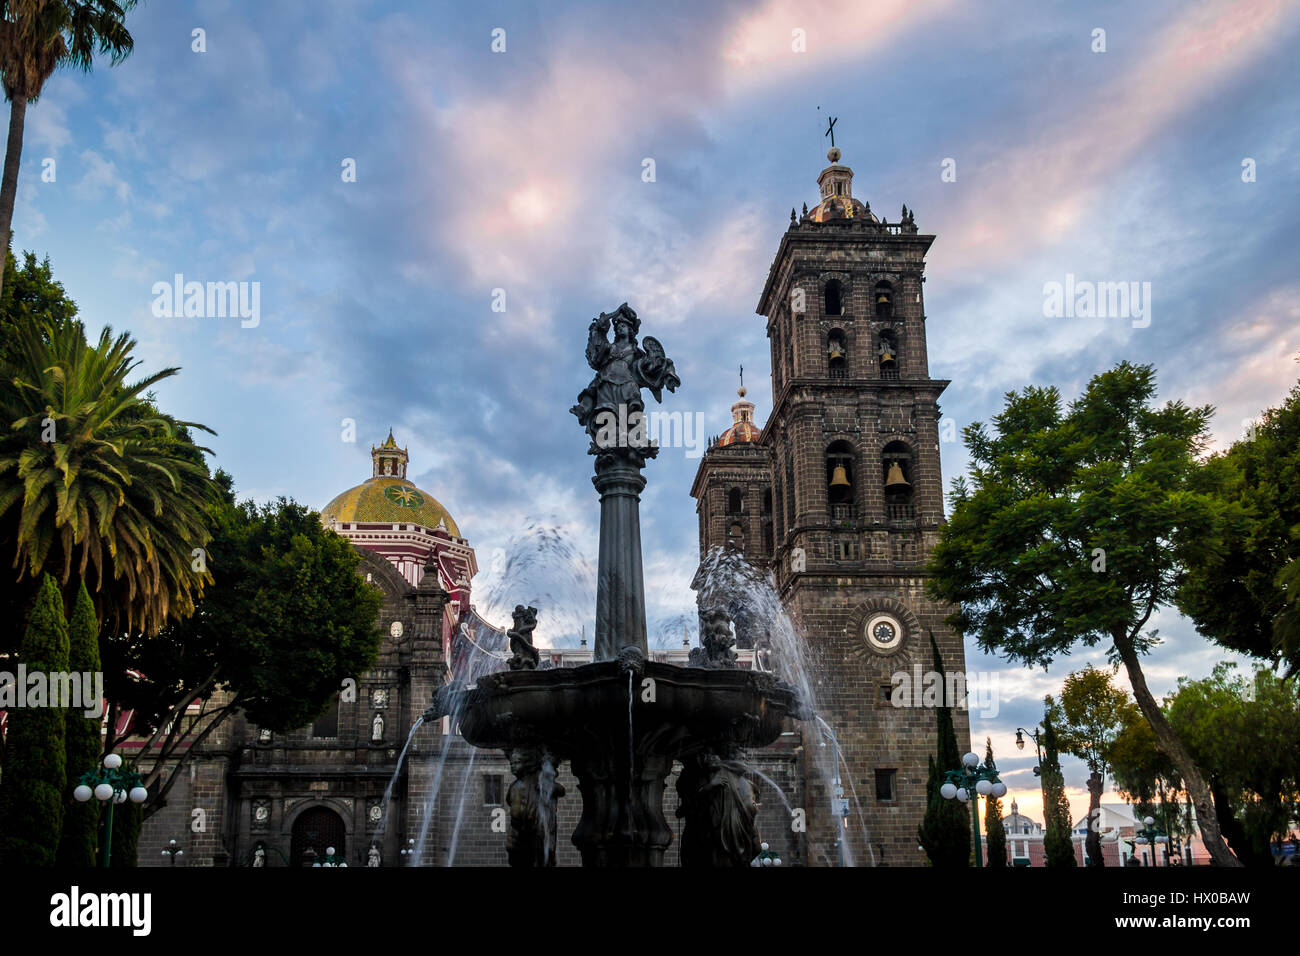 Fontaine et cathédrale de Puebla au coucher du soleil - Puebla, Mexique Banque D'Images